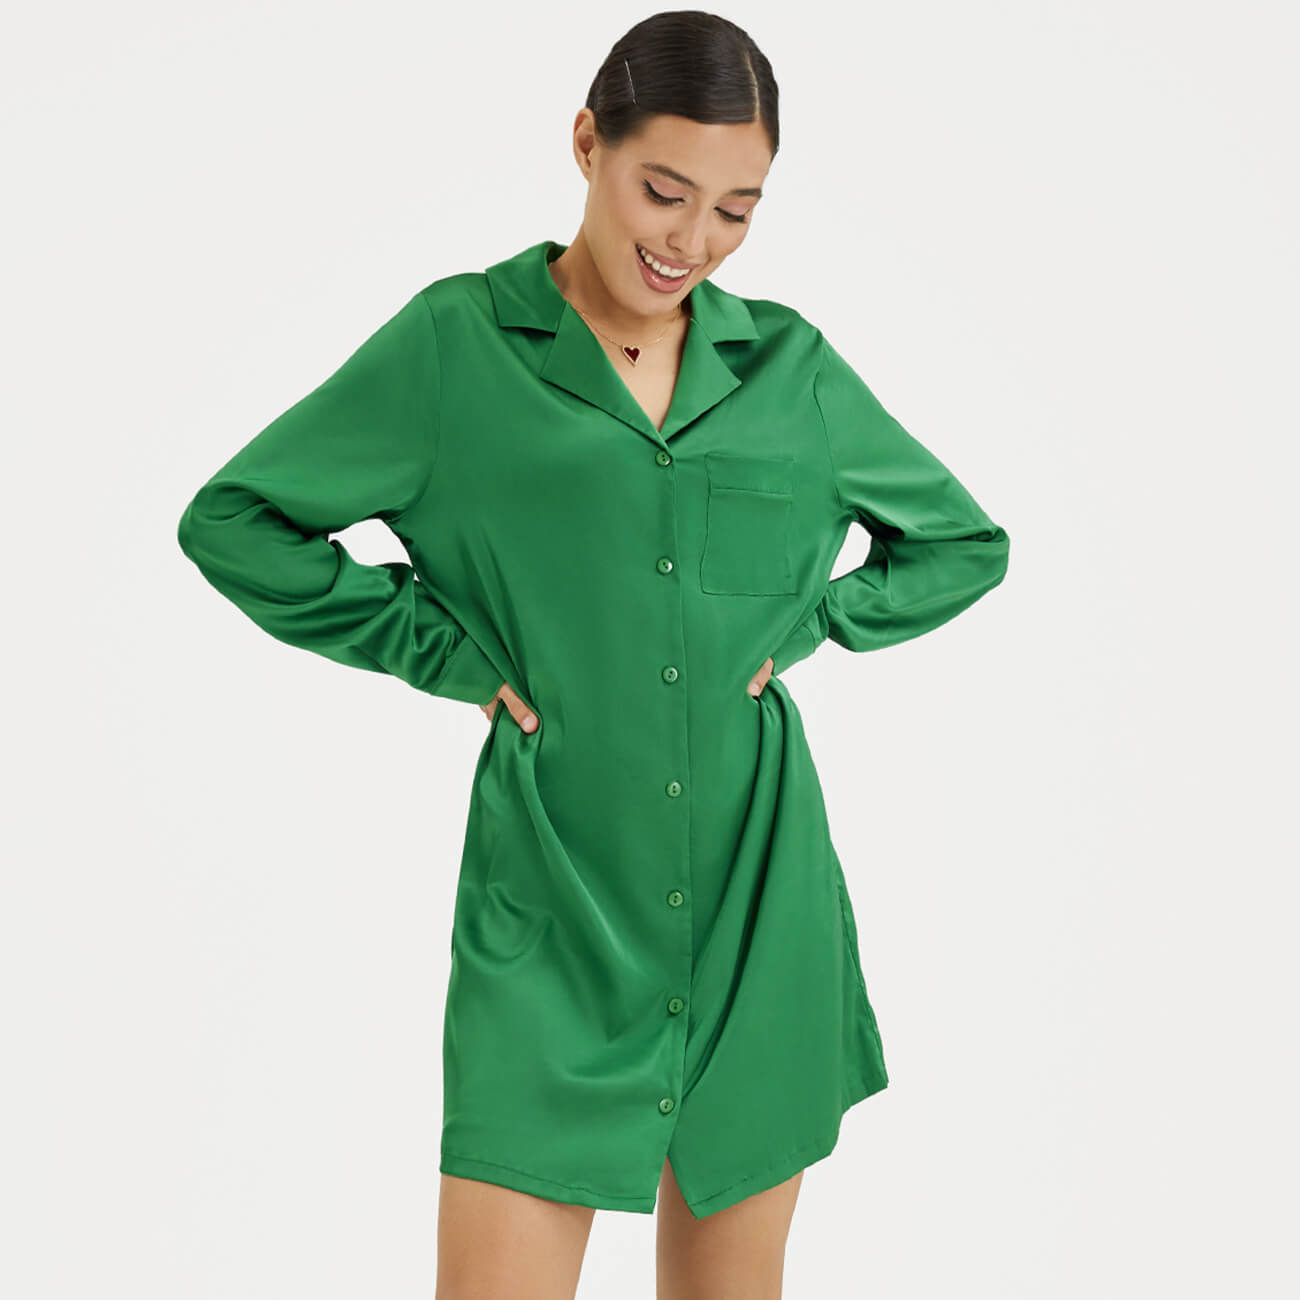 Рубашка женская, р. XL, удлиненная, с длинным рукавом, полиэстер/эластан, зеленая, Madeline рубашка женская р s удлиненная с длинным рукавом полиэстер эластан зеленая madeline